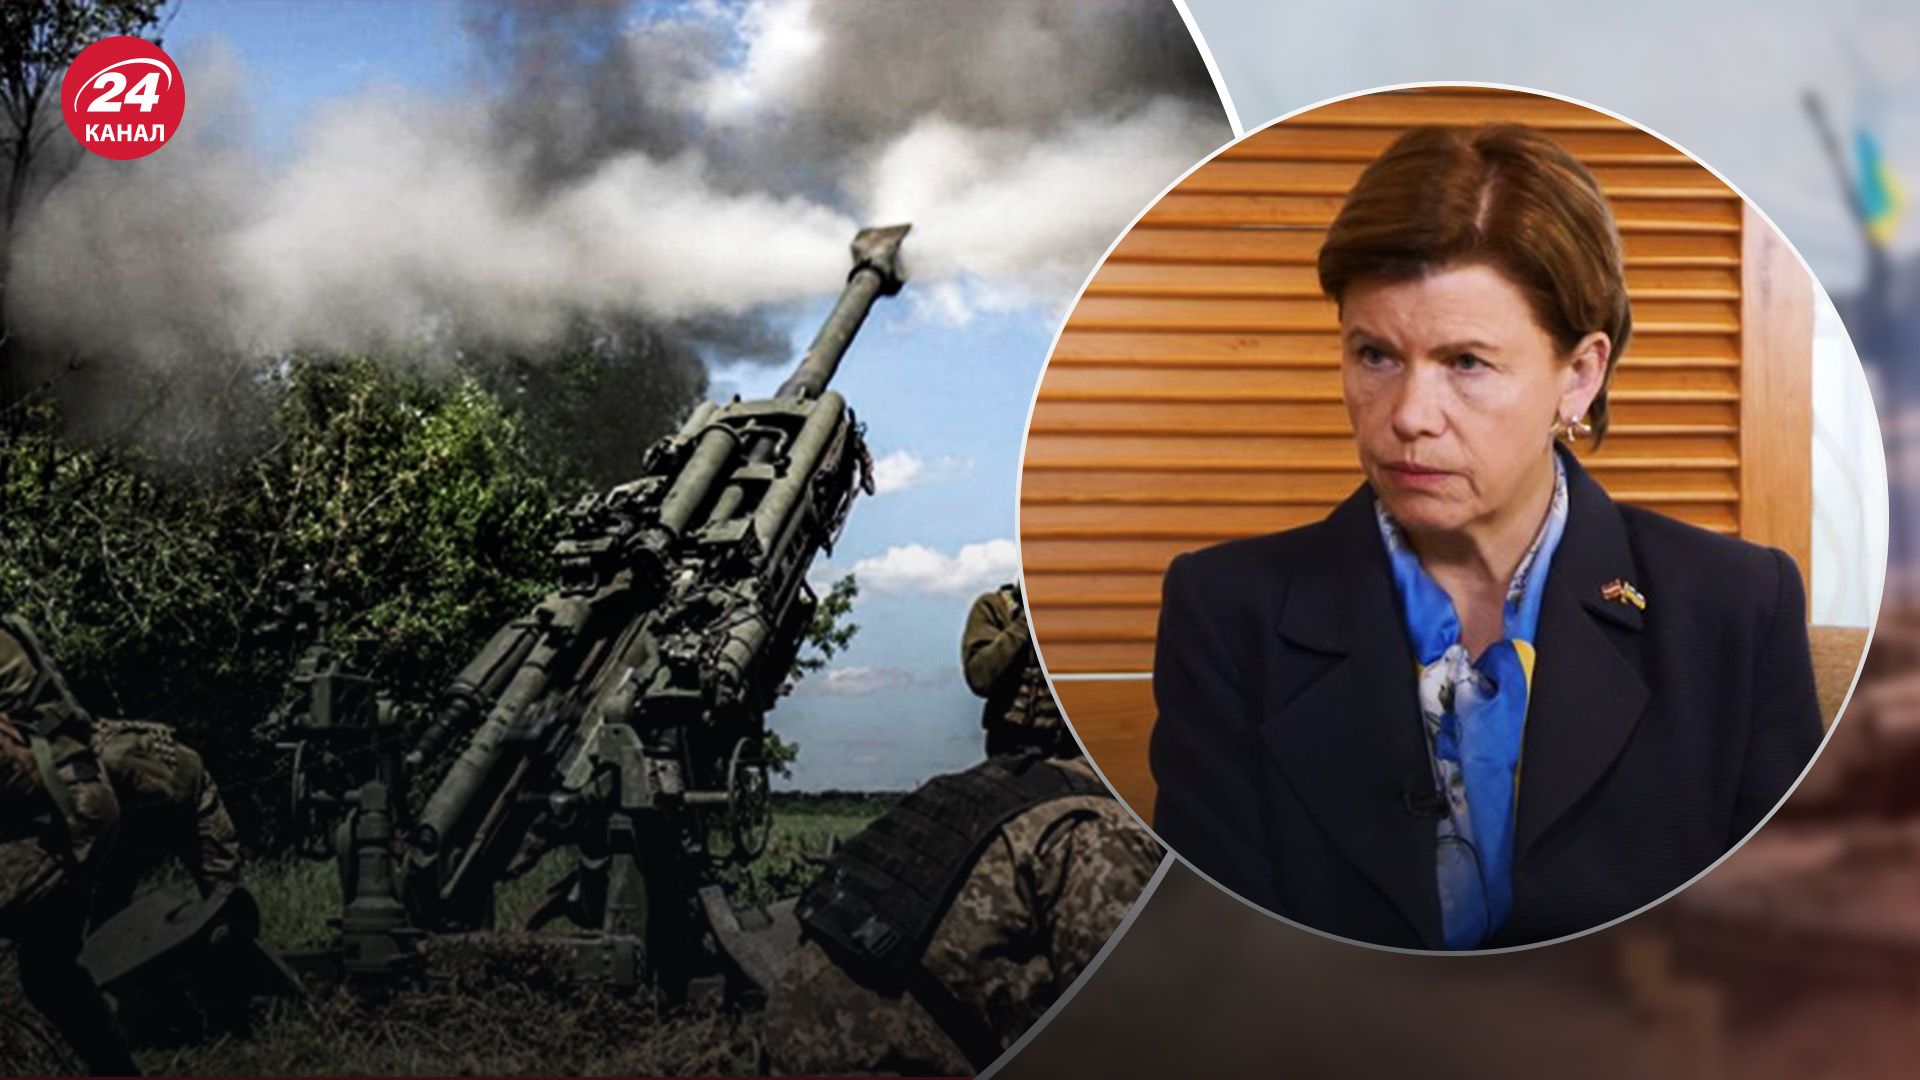 "Имеет право": в МИД Латвии считают, что Украина может бить по России - 24 Канал